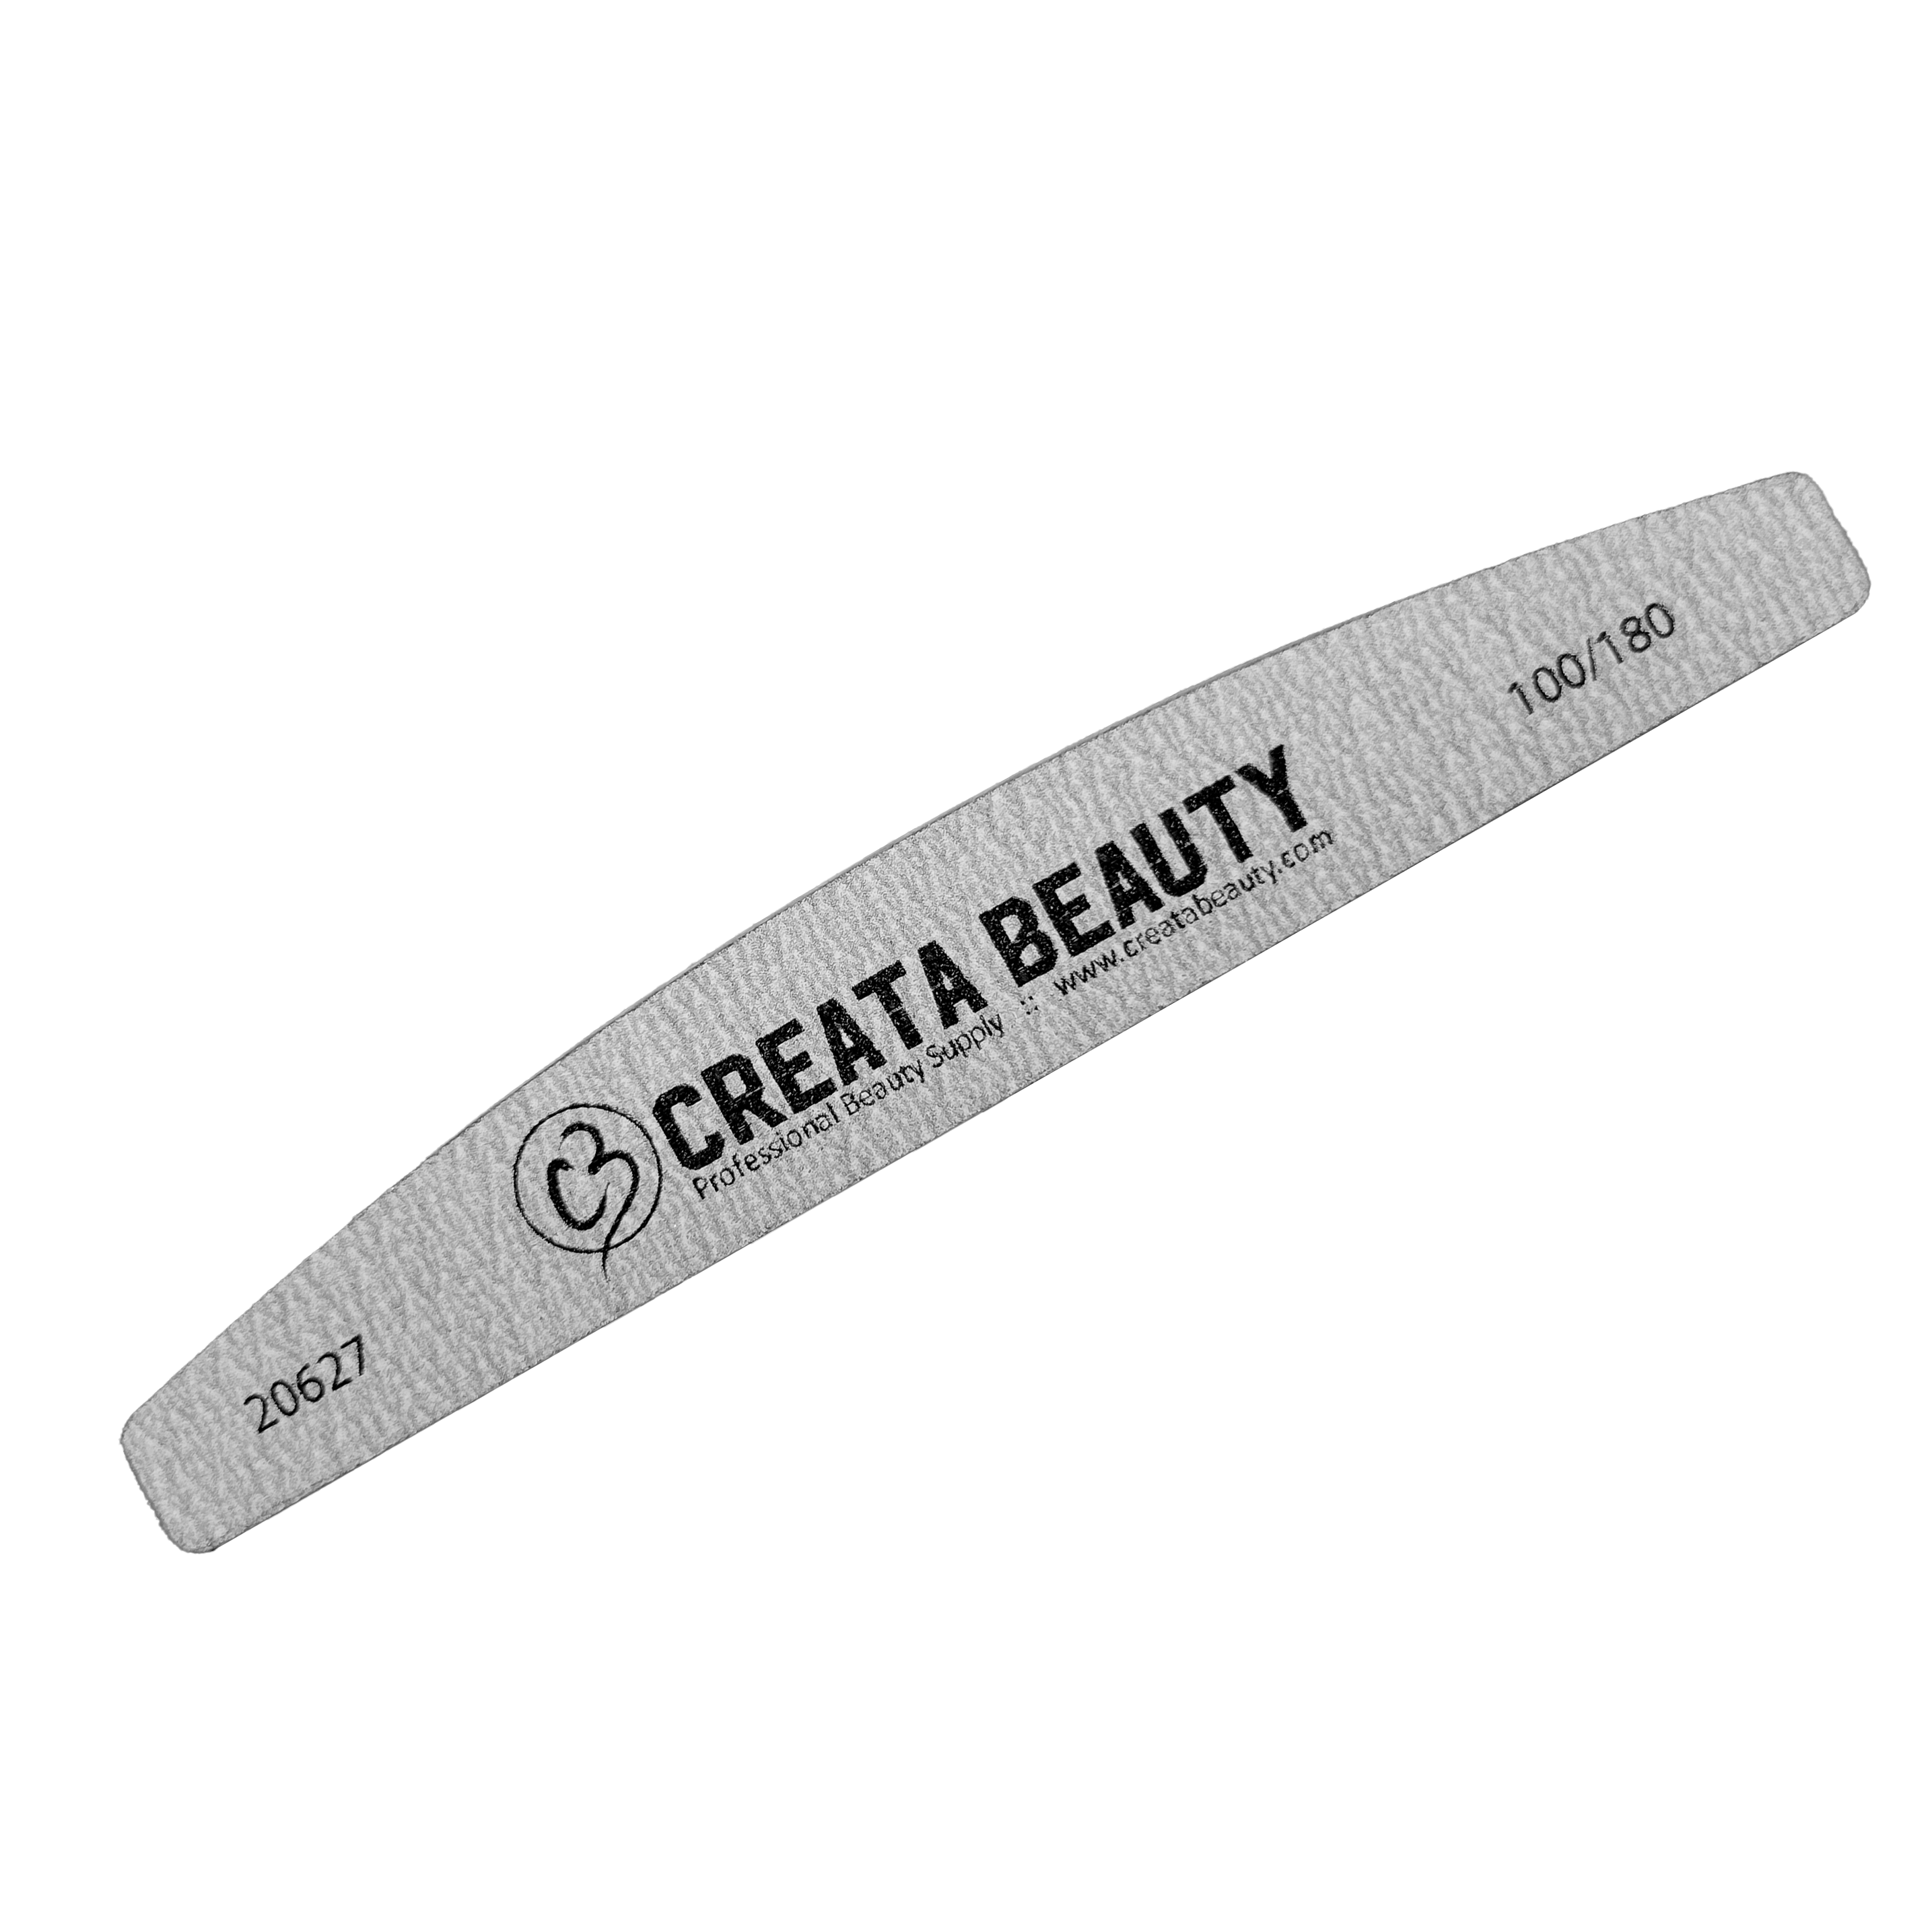 Creata Beauty Premium Files - Bridge Zebra - Creata Beauty - Professional Beauty Products